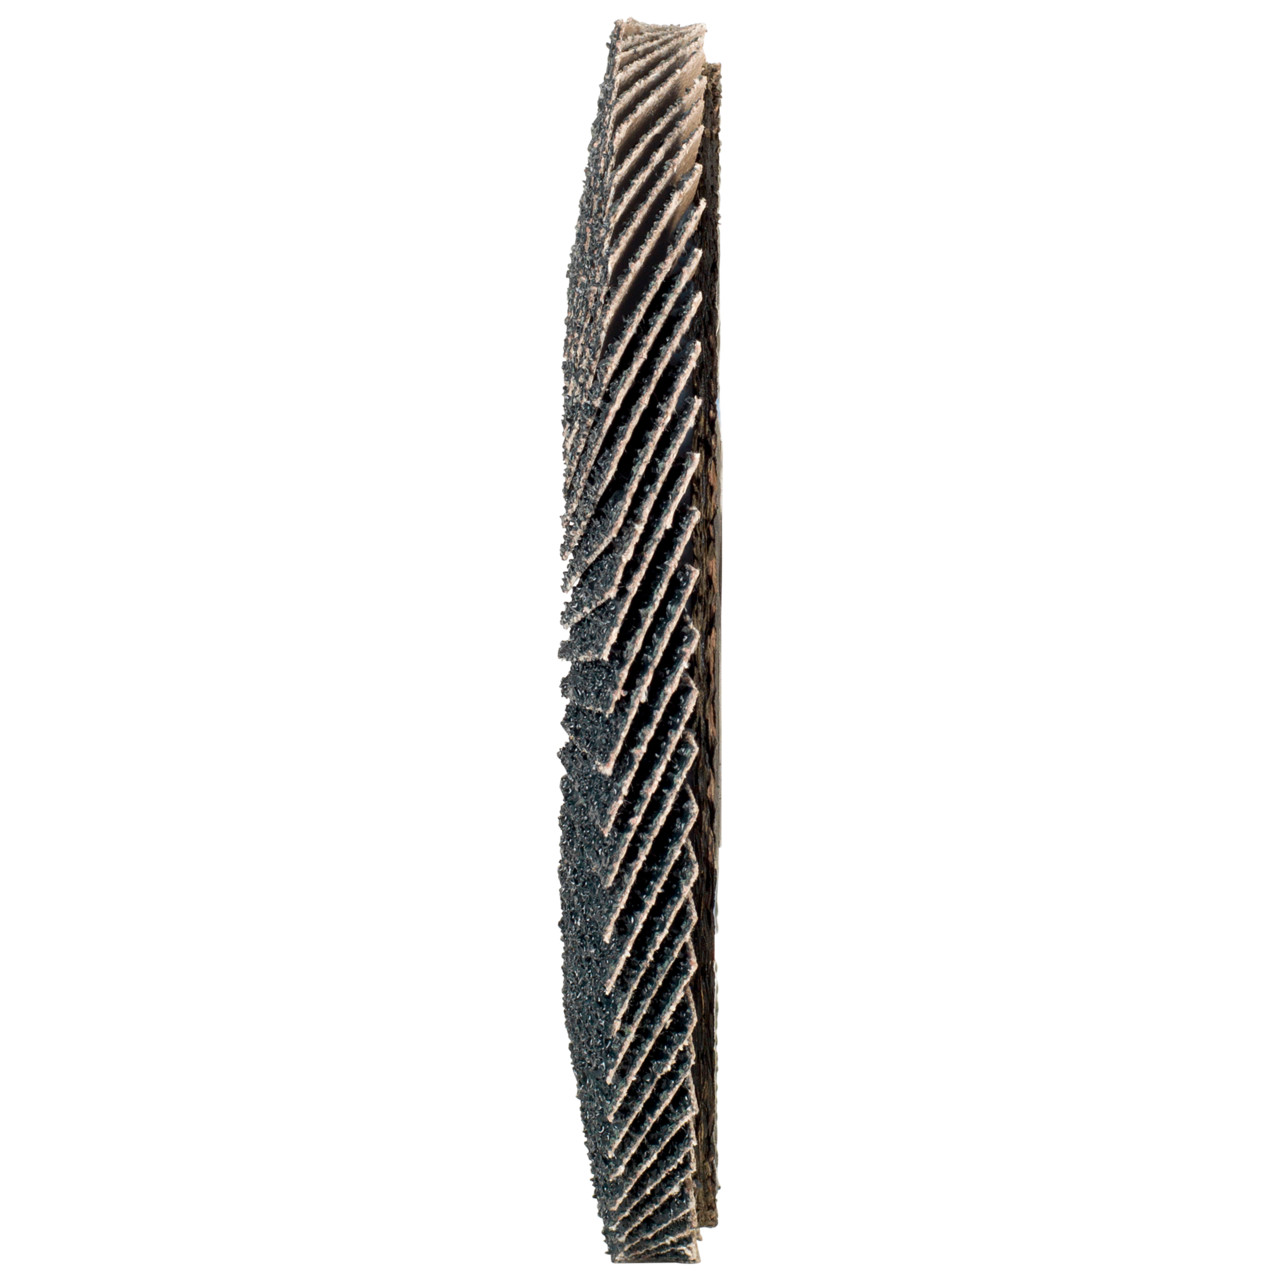 Rondella dentata Tyrolit DxH 115x22.2 2in1 per acciaio e acciaio inox, P80, forma: 28A - versione diritto (versione con corpo portante in fibra di vetro), Art. 668691